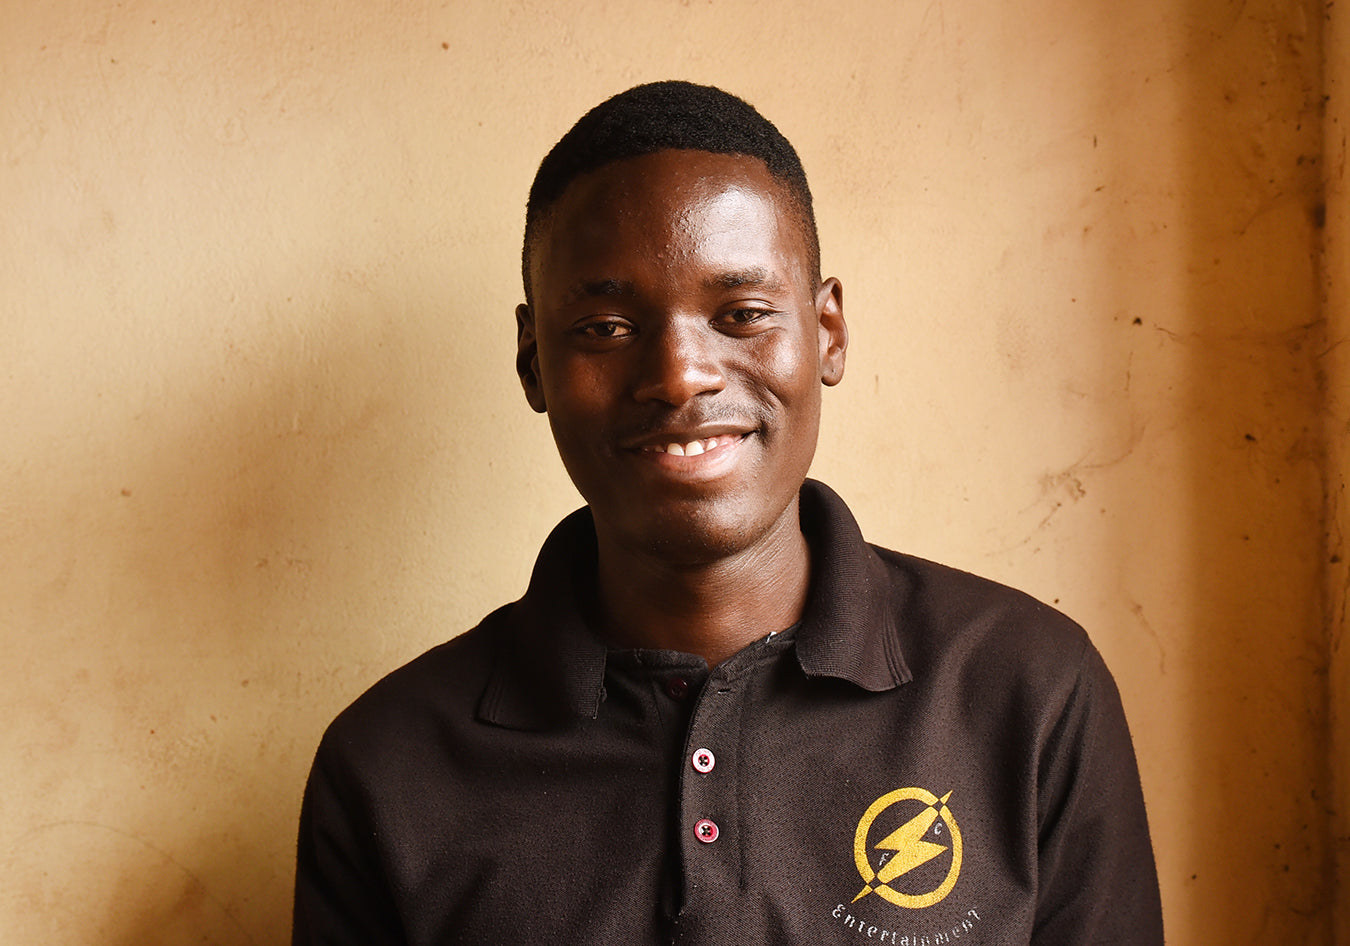 Ugandan teen smiling and wearing black shirt